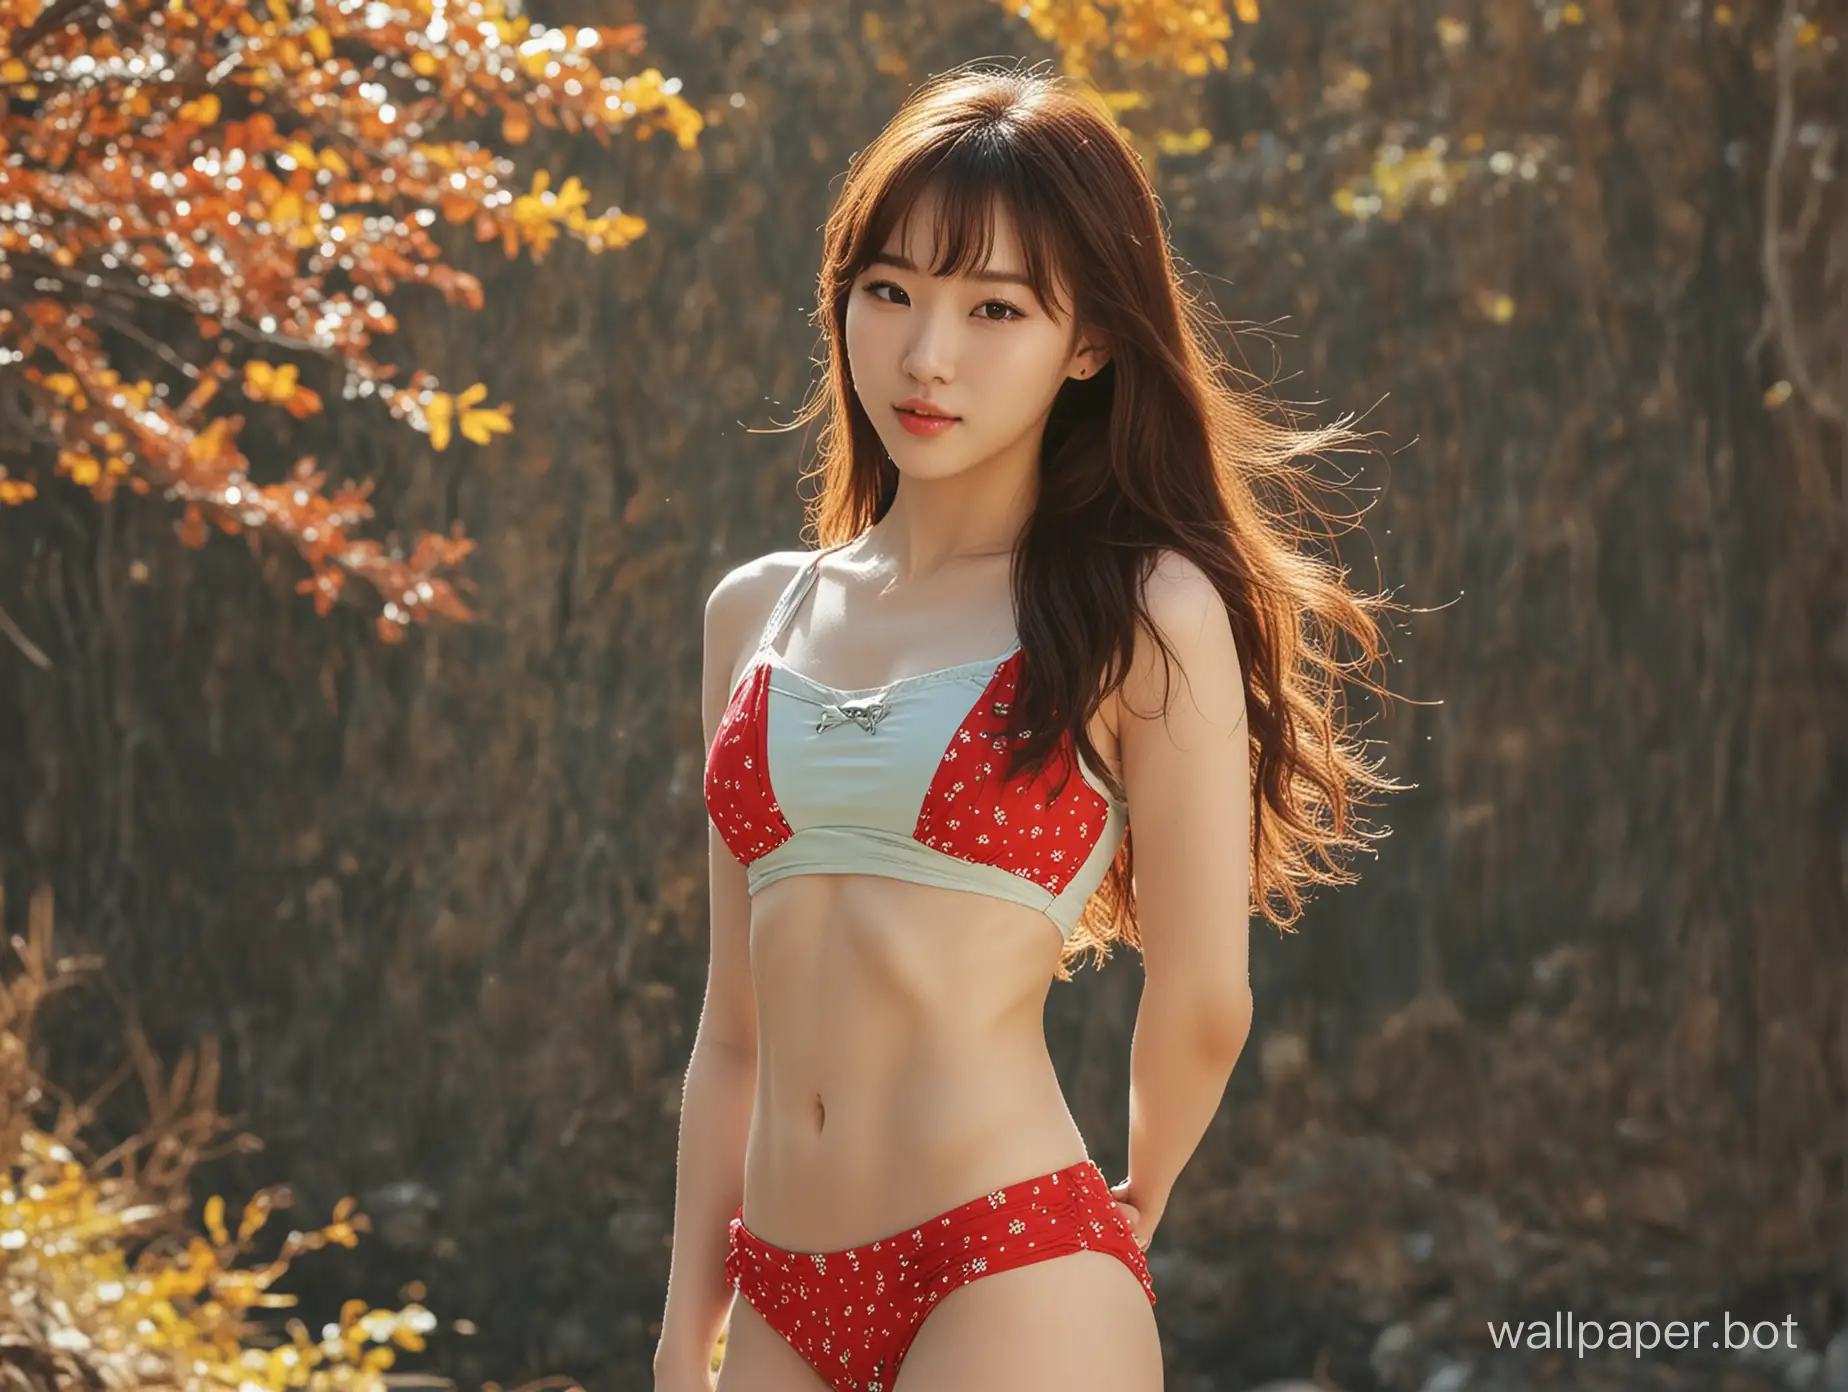 Autumn-Woods-Korean-Little-Girl-in-Patterned-Wacoal-Bikini-Swimsuit-by-the-Creek